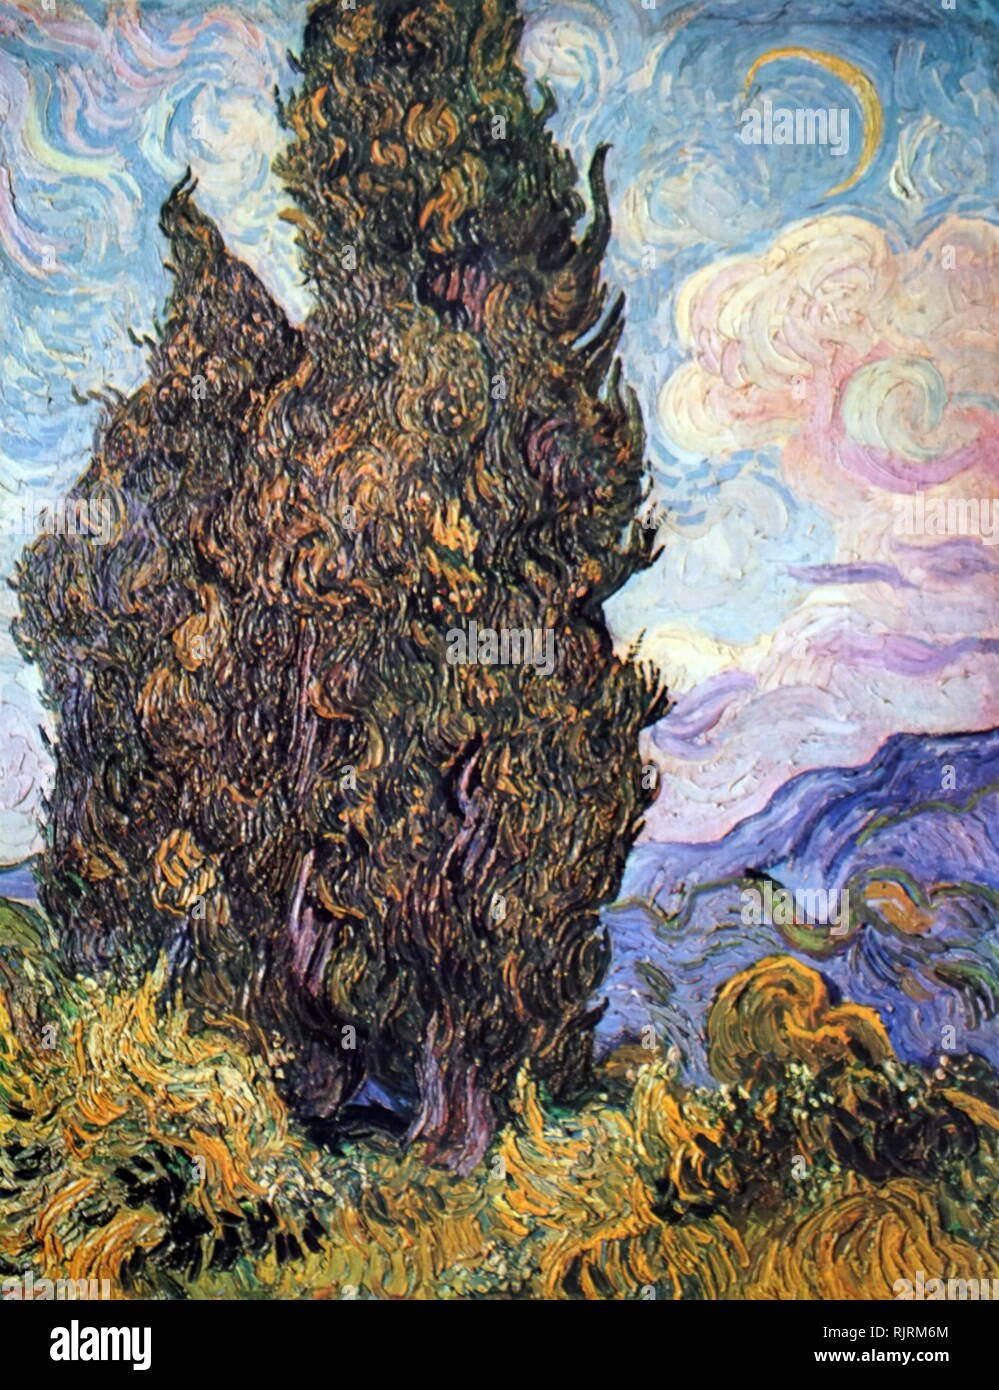 Cipreses; 1889, óleo sobre lienzo, por el artista holandés Vincent van Gogh (1853-1890). Pintada poco después de Van Gogh comenzó su año de estancia en el asilo de Saint Remy) Foto de stock